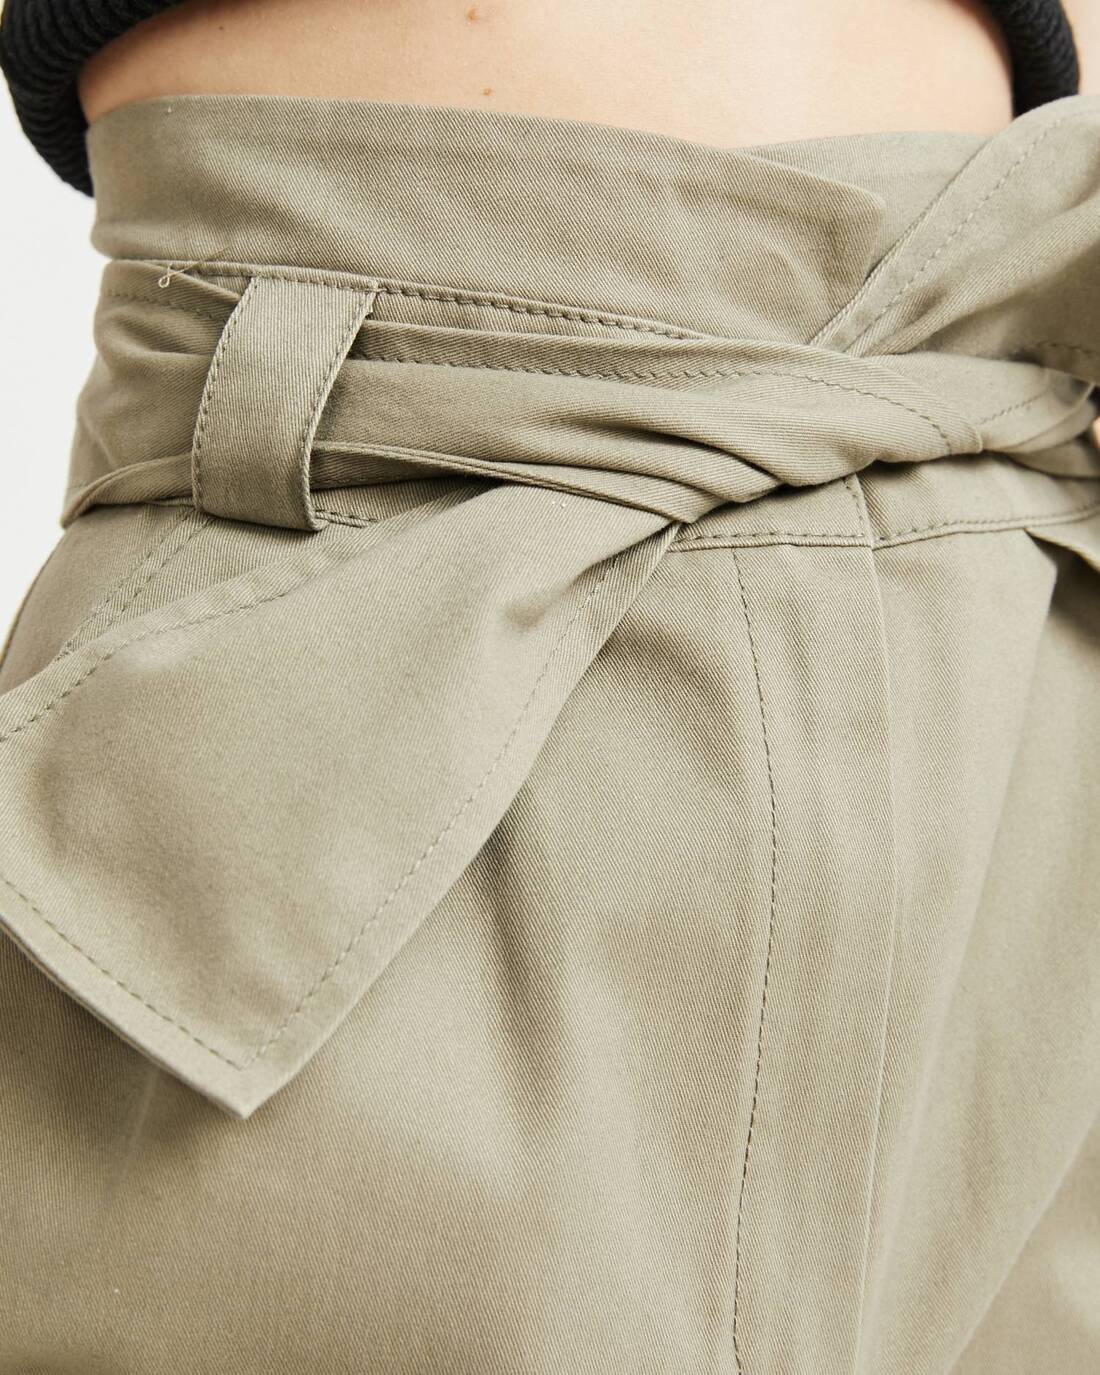 Bow-belt mini skirt